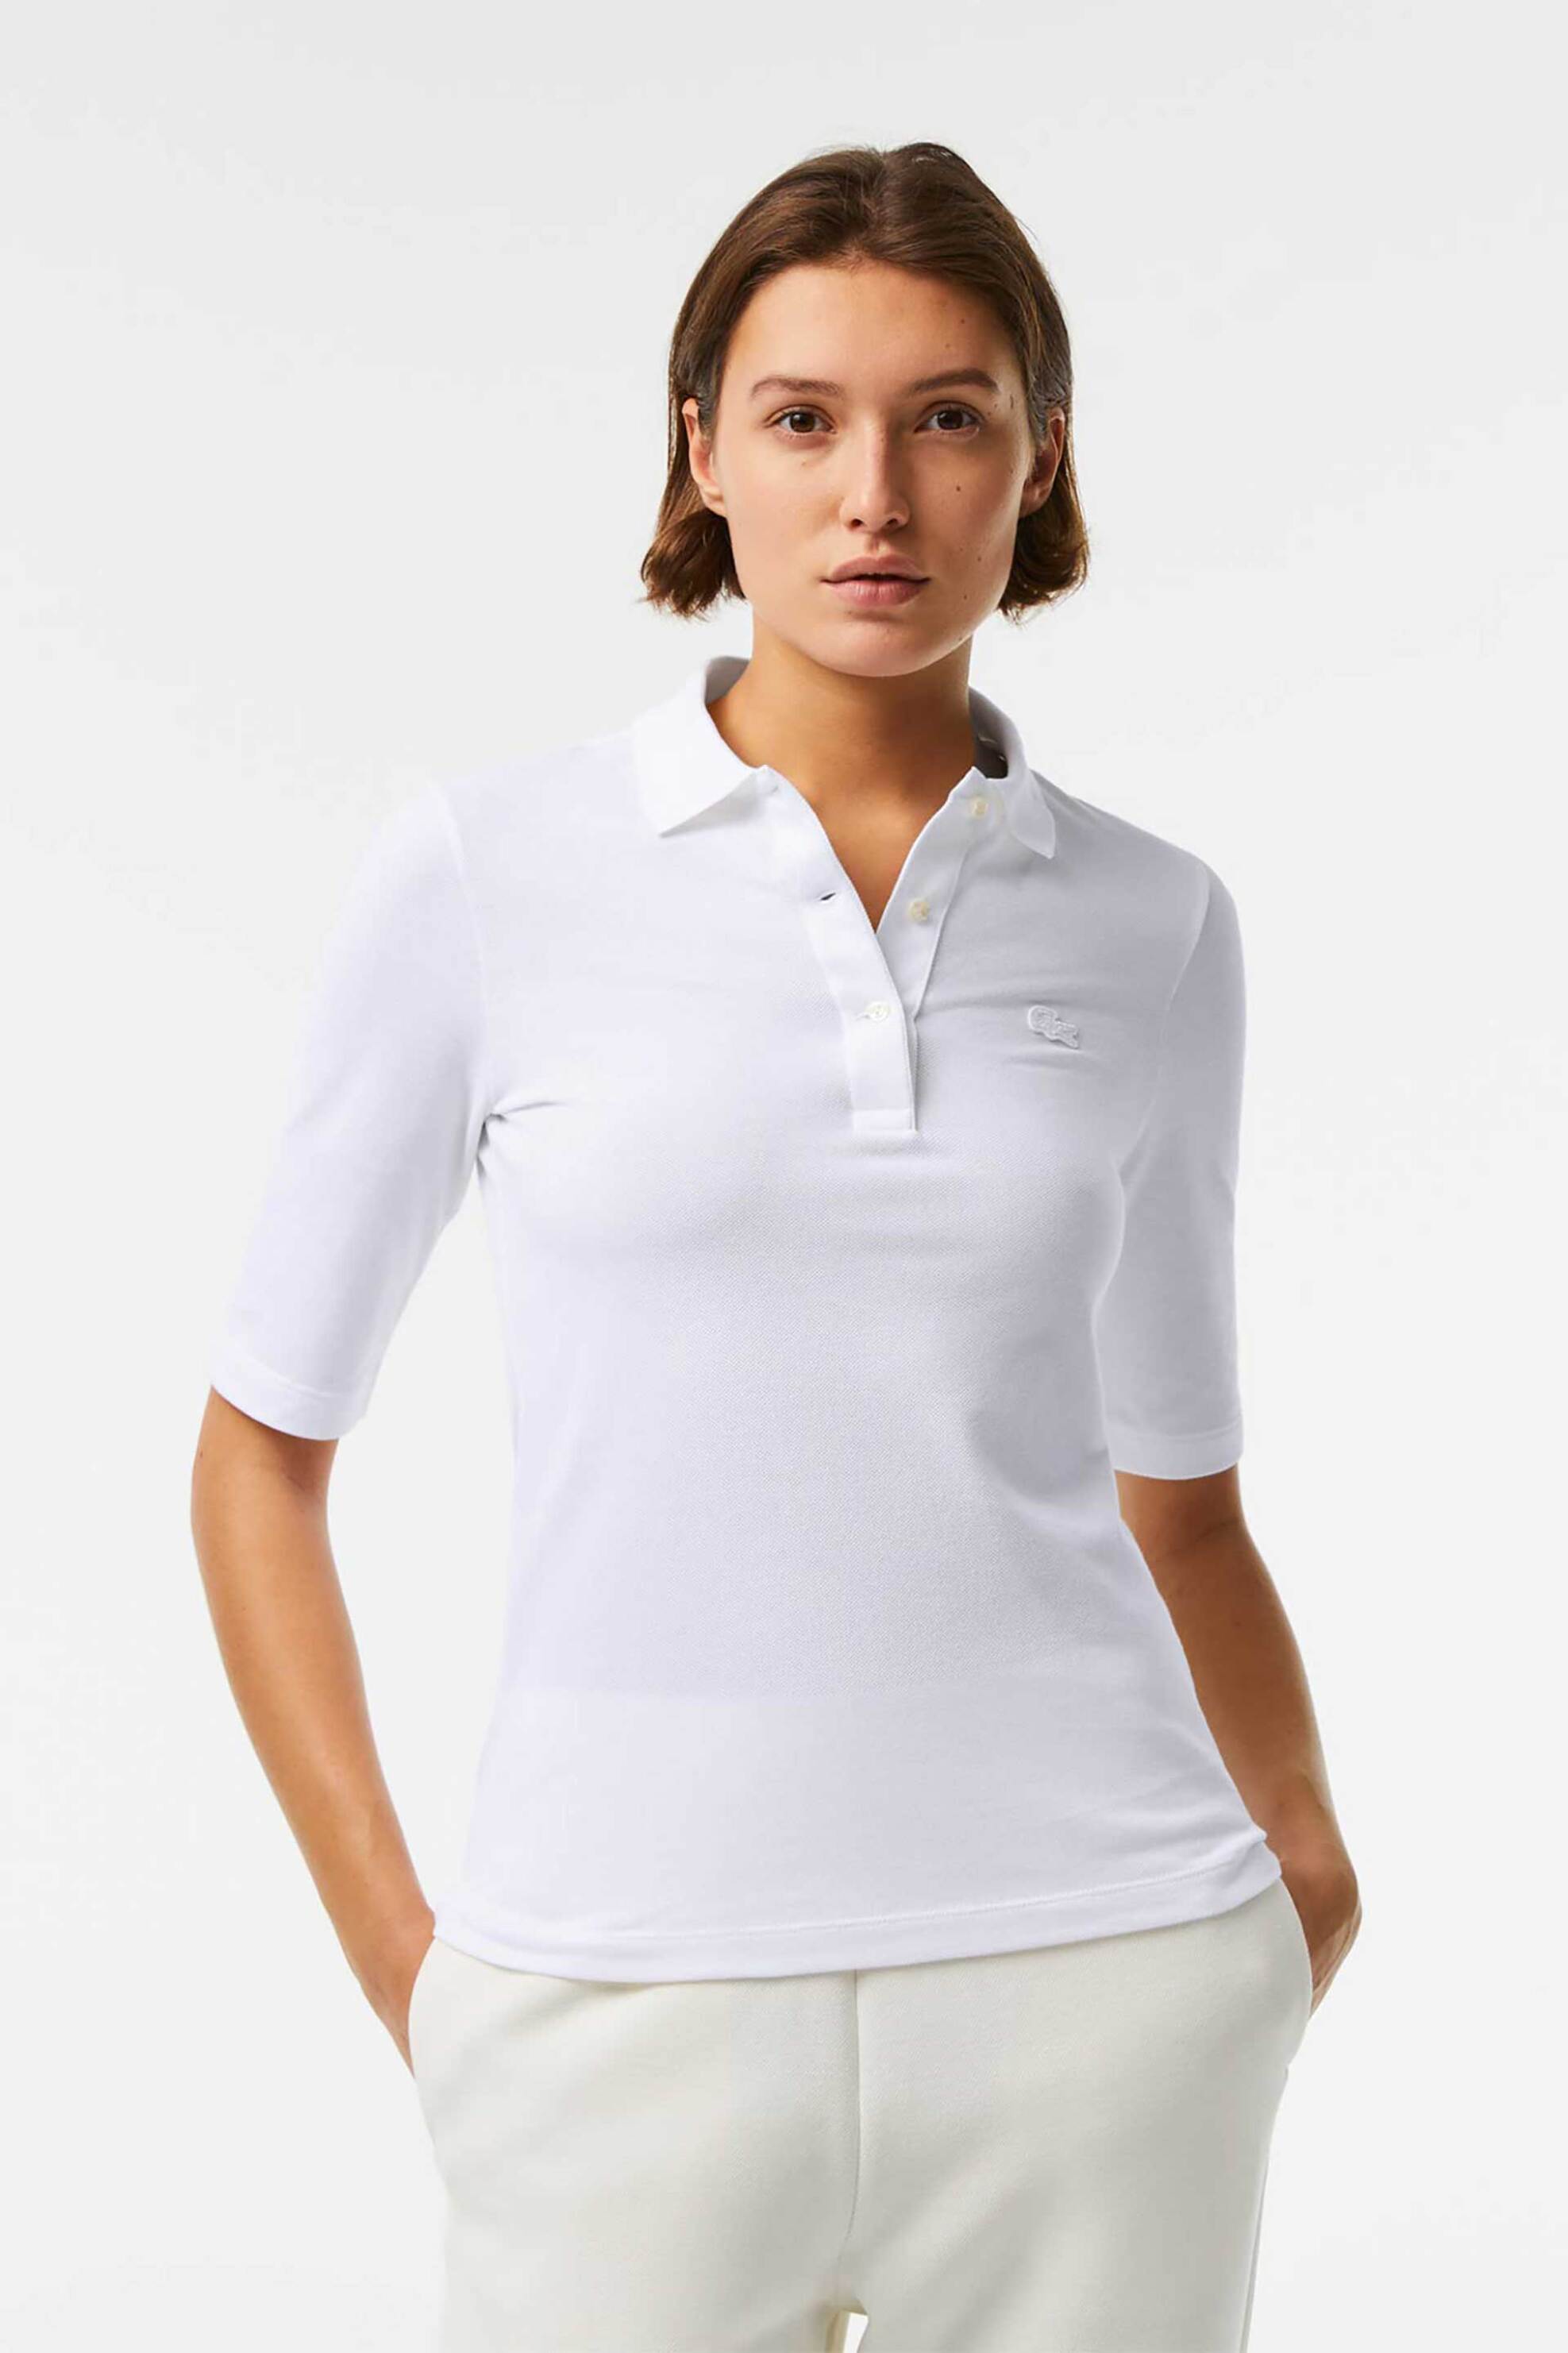 Γυναίκα > ΡΟΥΧΑ > Tops > Μπλούζες > Πόλο Lacoste γυναικεία μπλούζα πόλο μονόχρωμη με 3/4 μανίκι και κεντημένο λογότυπο - PF0503 Λευκό